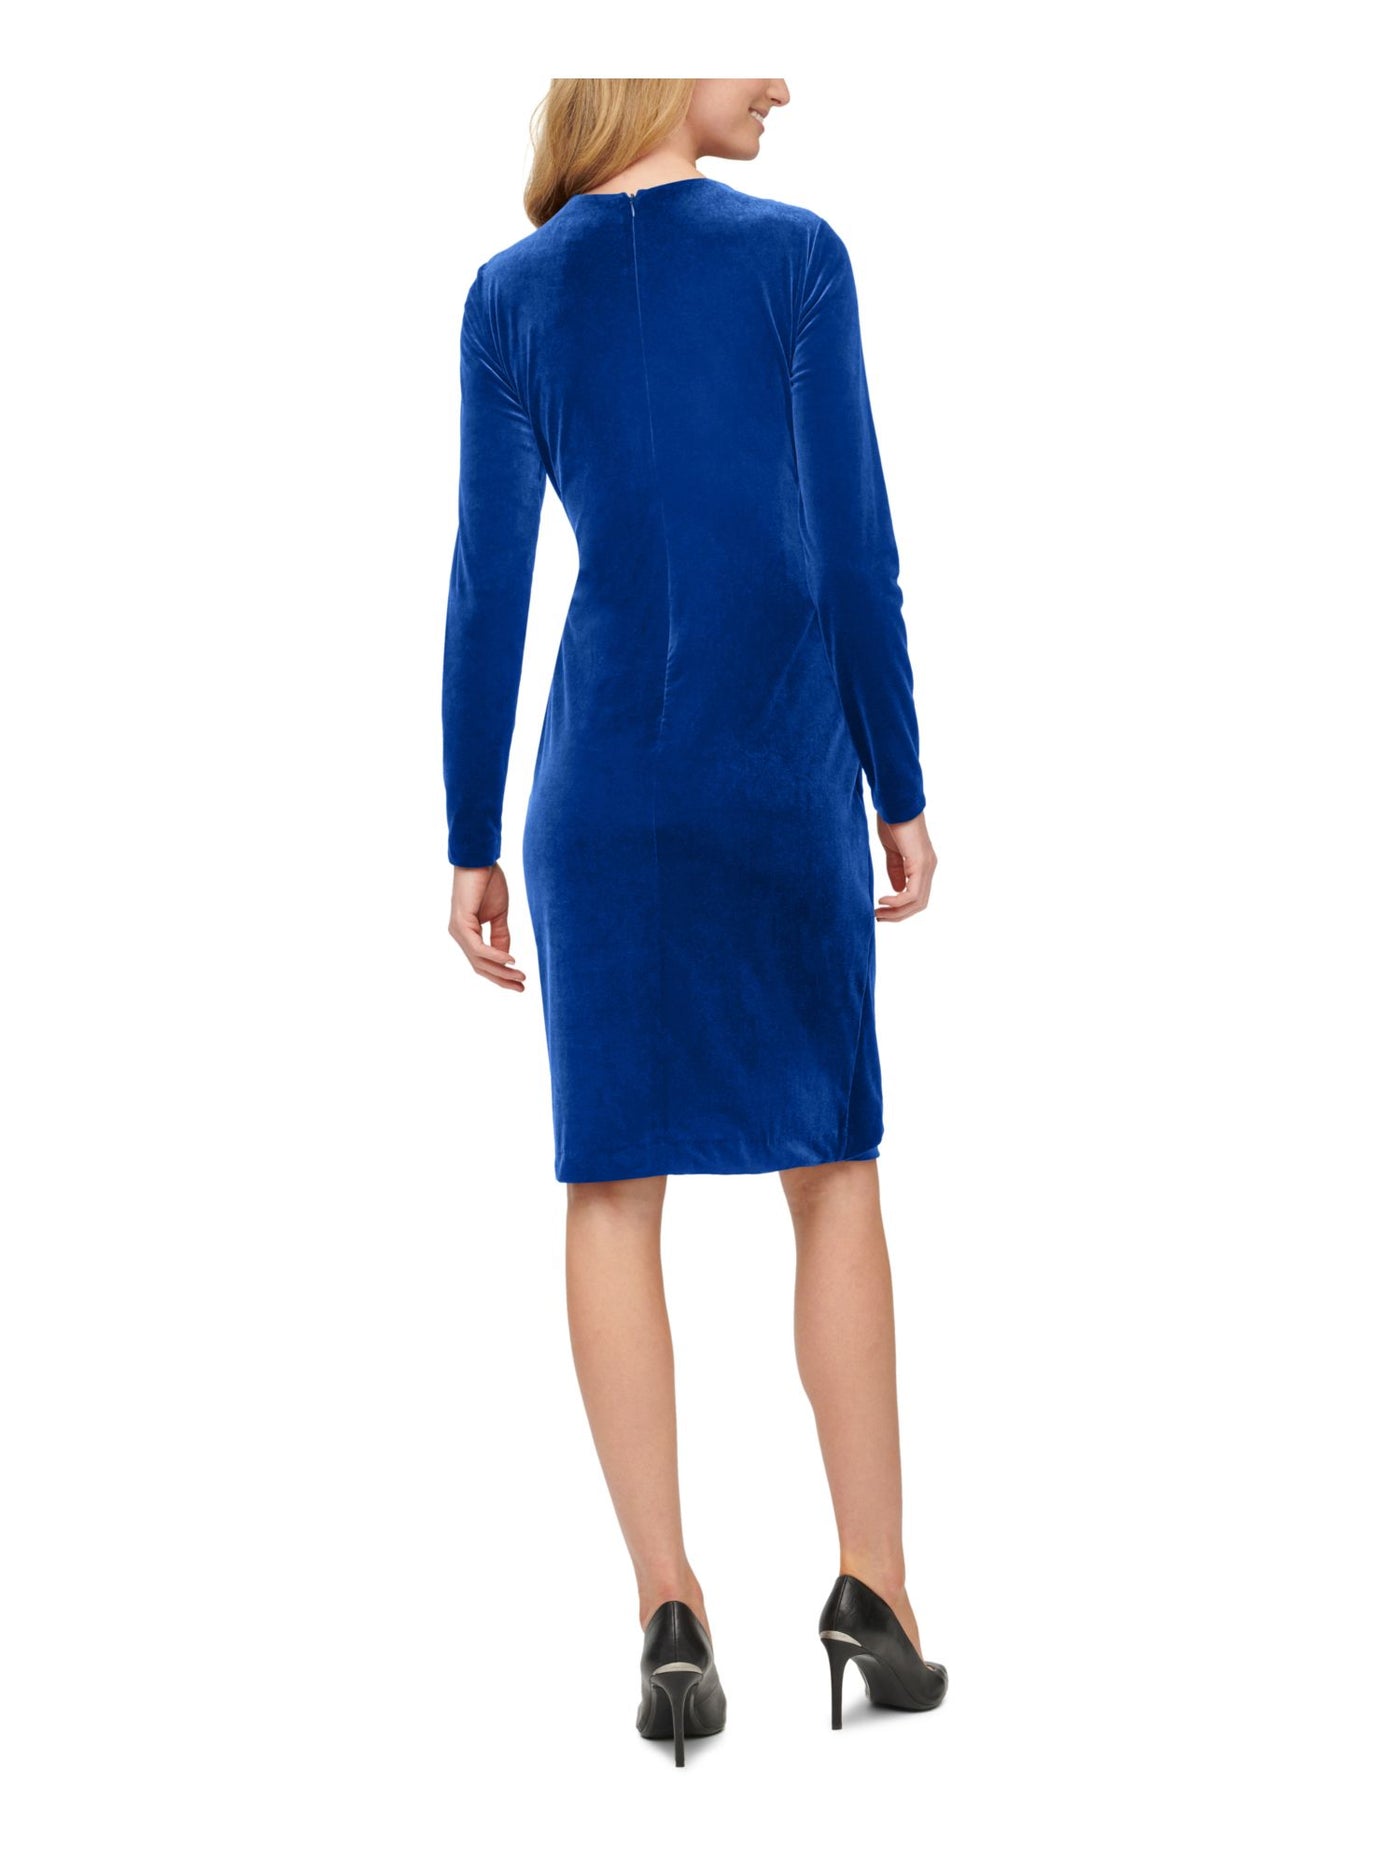 CALVIN KLEIN Womens Blue Surplice Neckline Short Cocktail Faux Wrap Dress 8